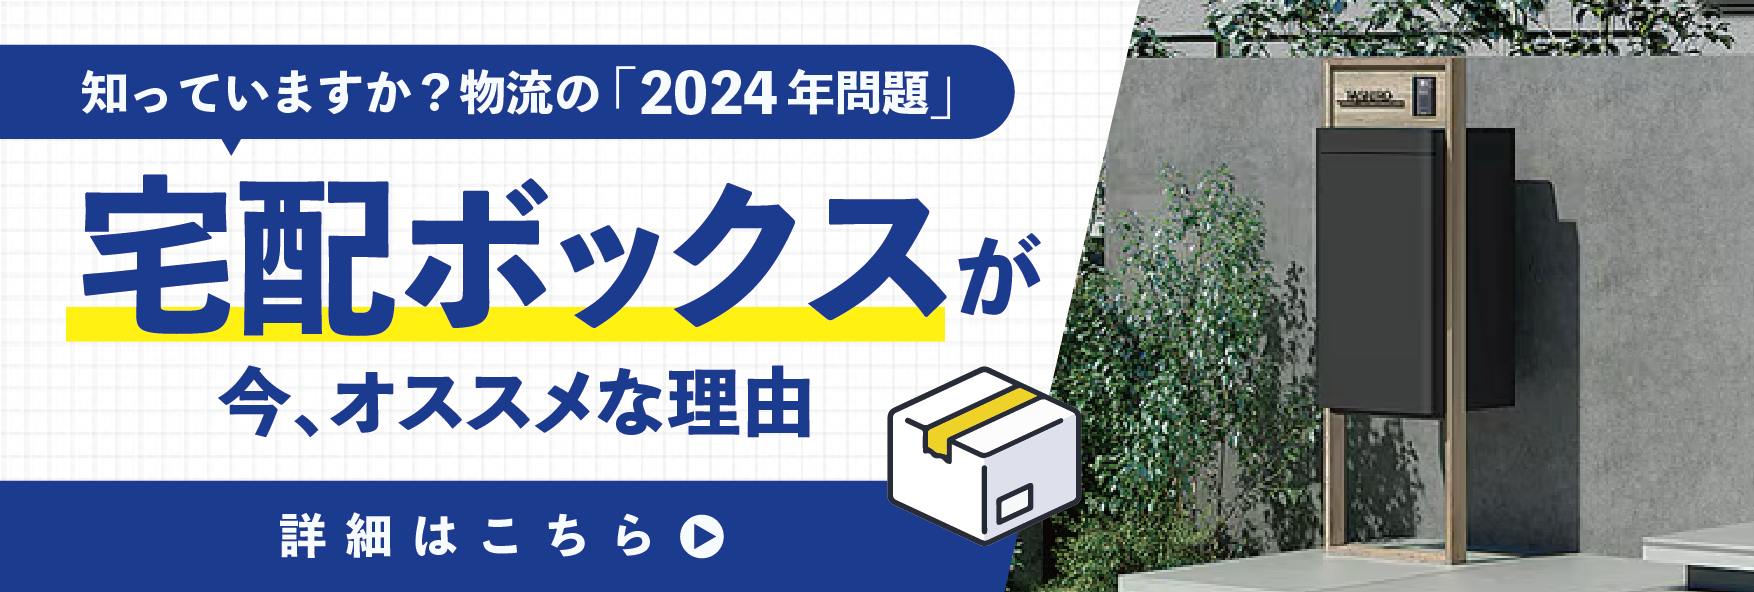 【あと1年で再配達できなくなる!?】物流の2024年問題と対策 南横浜トーヨー住器のイベントキャンペーン 写真5